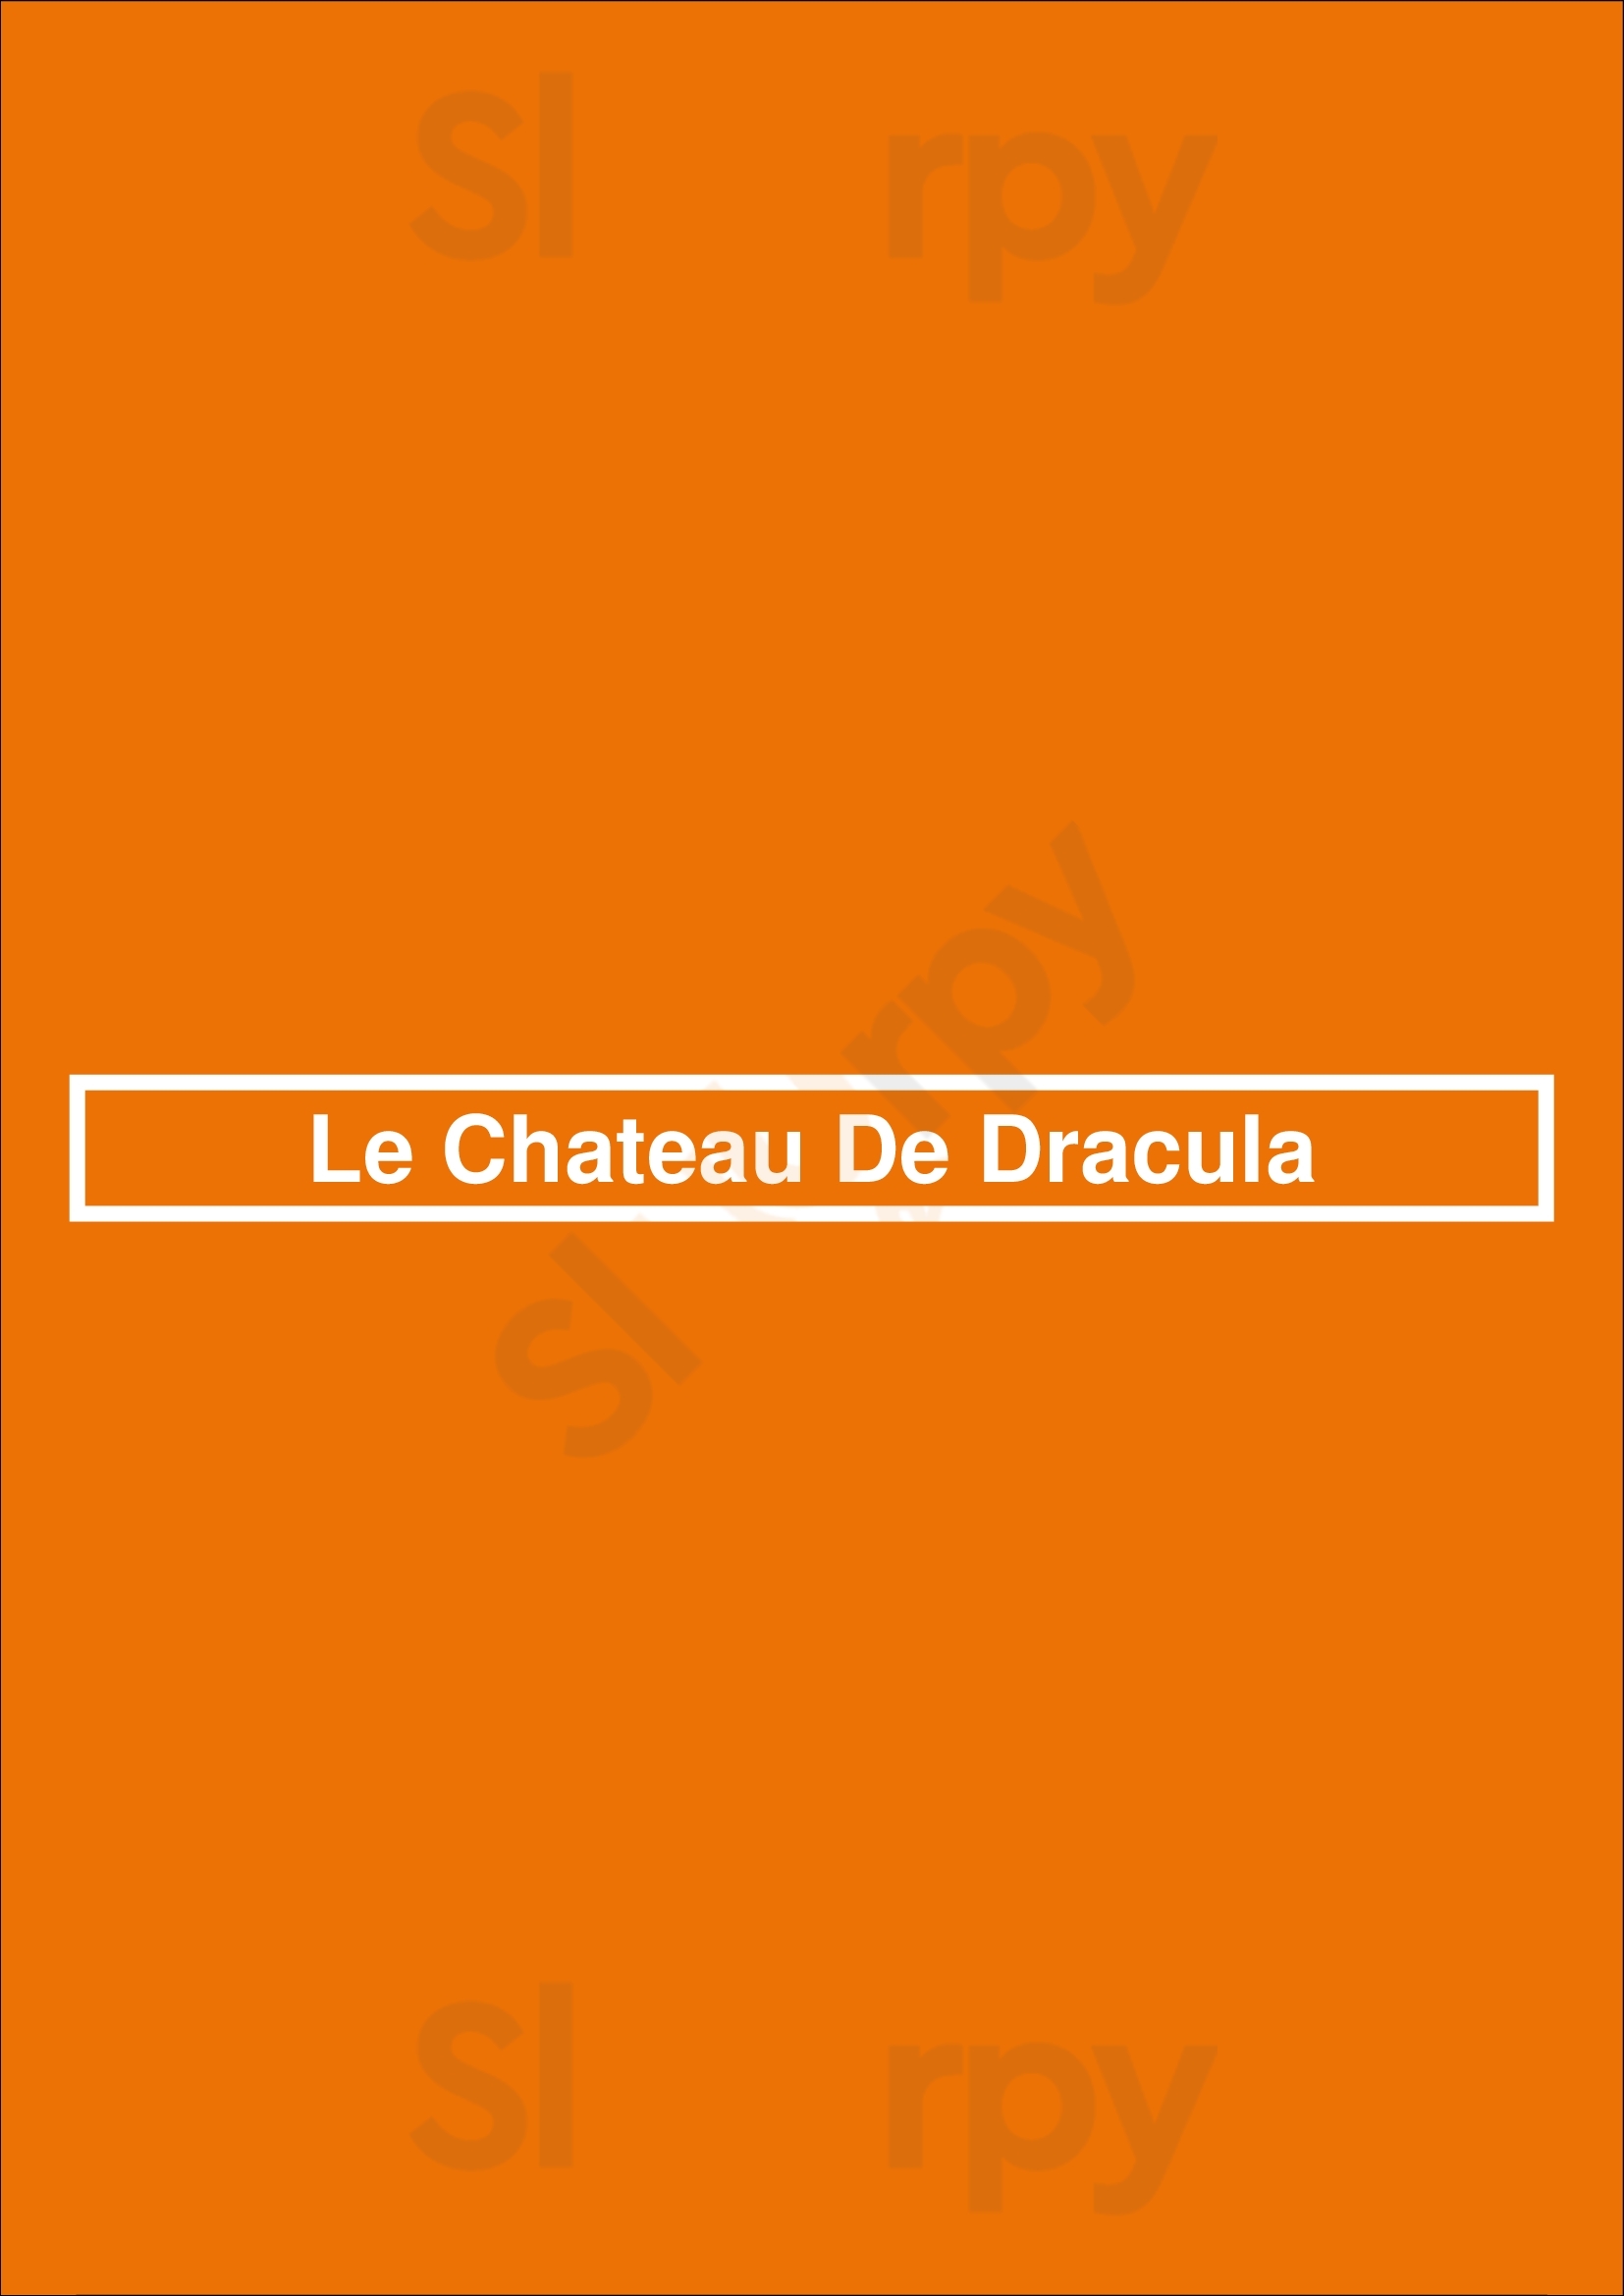 Le Chateau De Dracula Schaerbeek Menu - 1